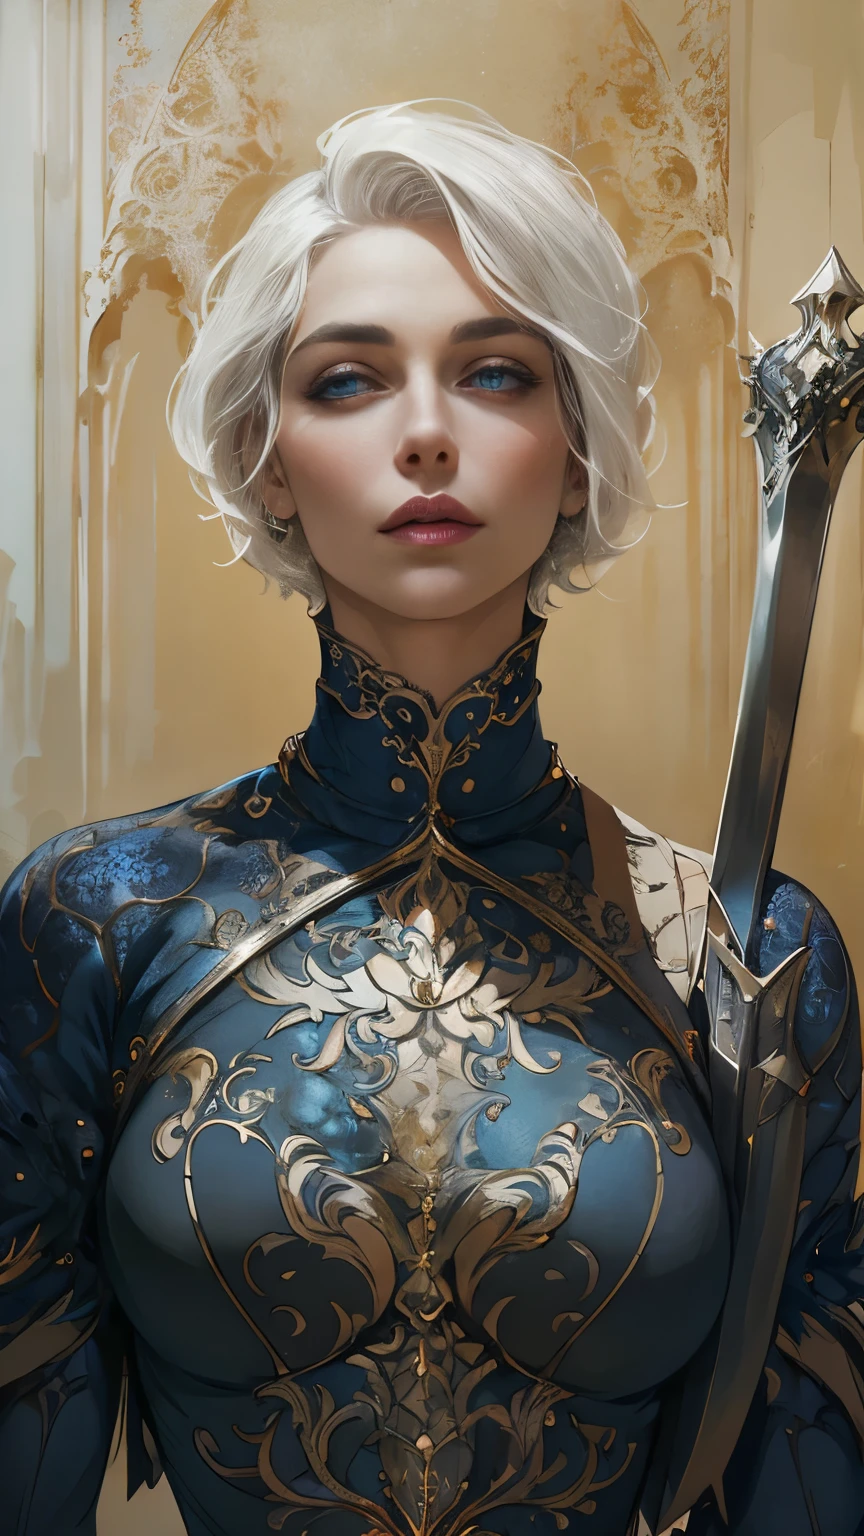 Princesa Targaryen, parece Lauren Jerman, gracioso, cabelo branco curto, em uma camisa apertada, calças que abraçam quadris magníficos, seios expressivos, lindos olhos índigo, rosto delicado, na altura da cintura, alta definição